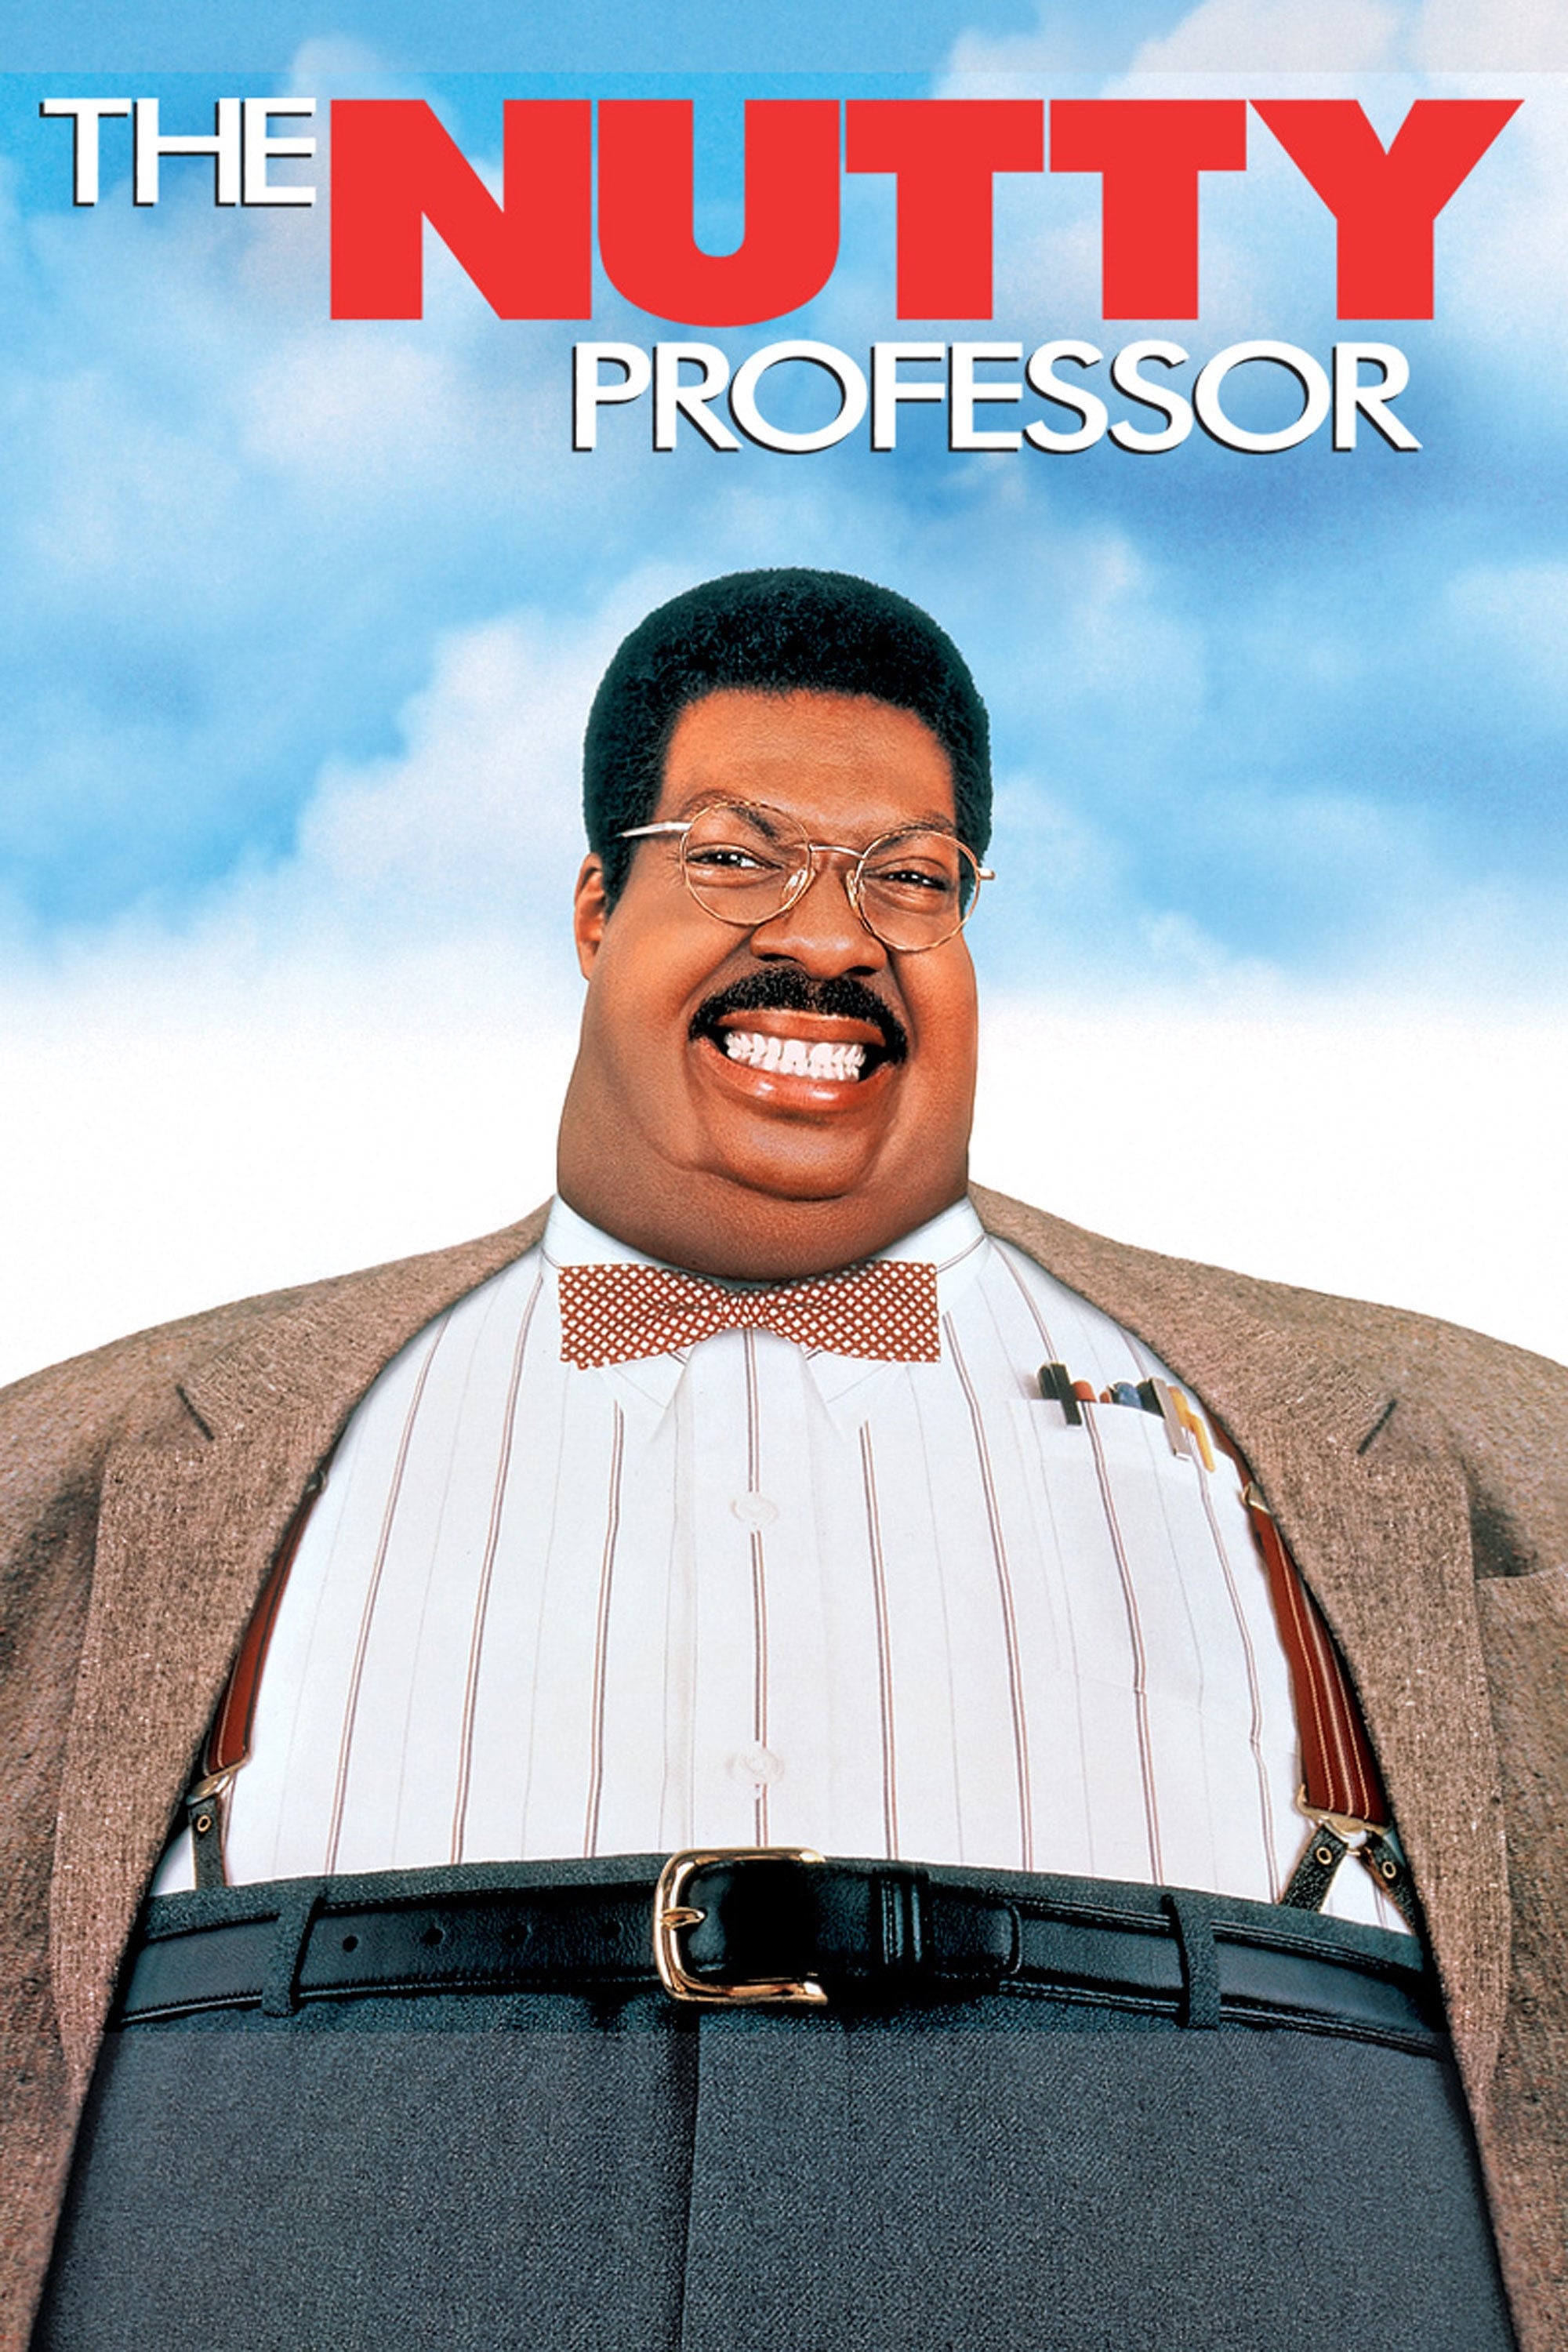 O Professor Aloprado